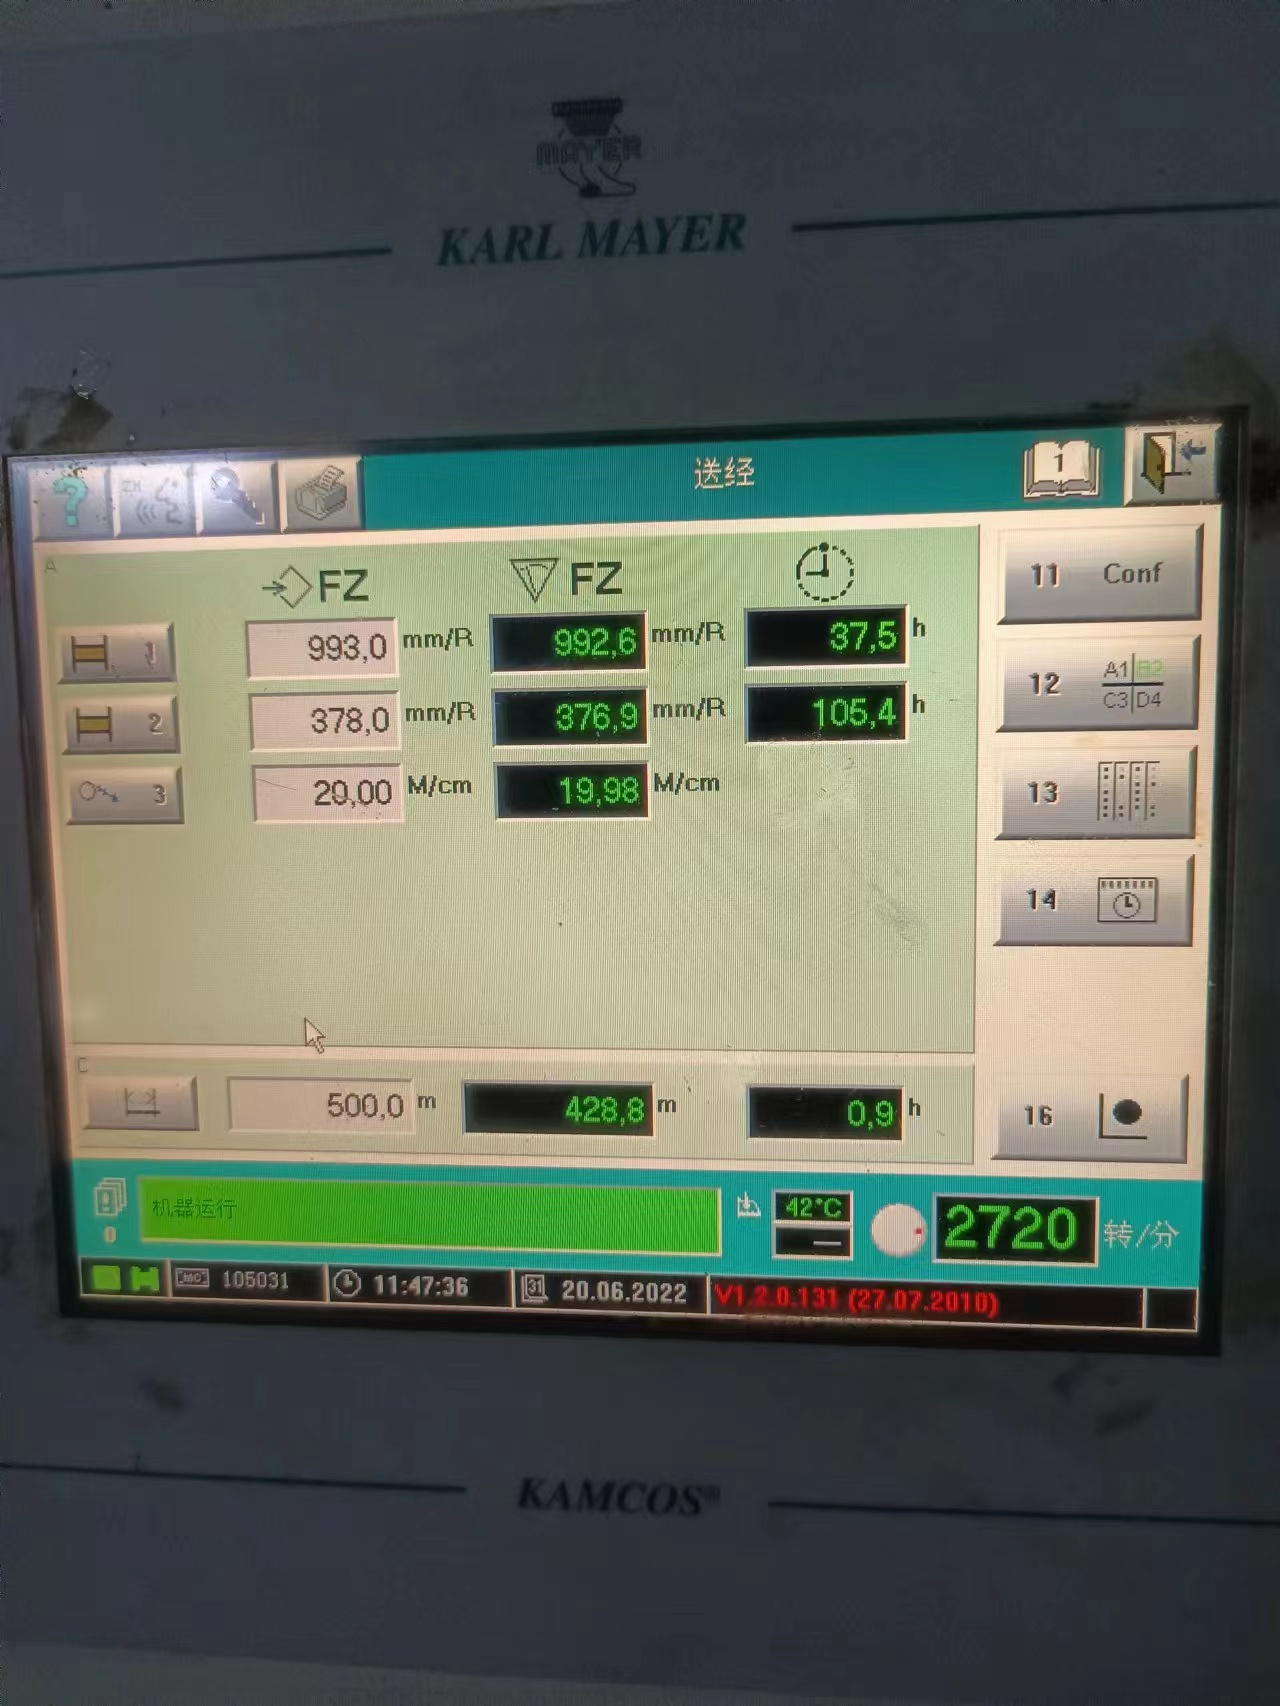 Karl Mayer warp knitting machine HKS2-3 (4)